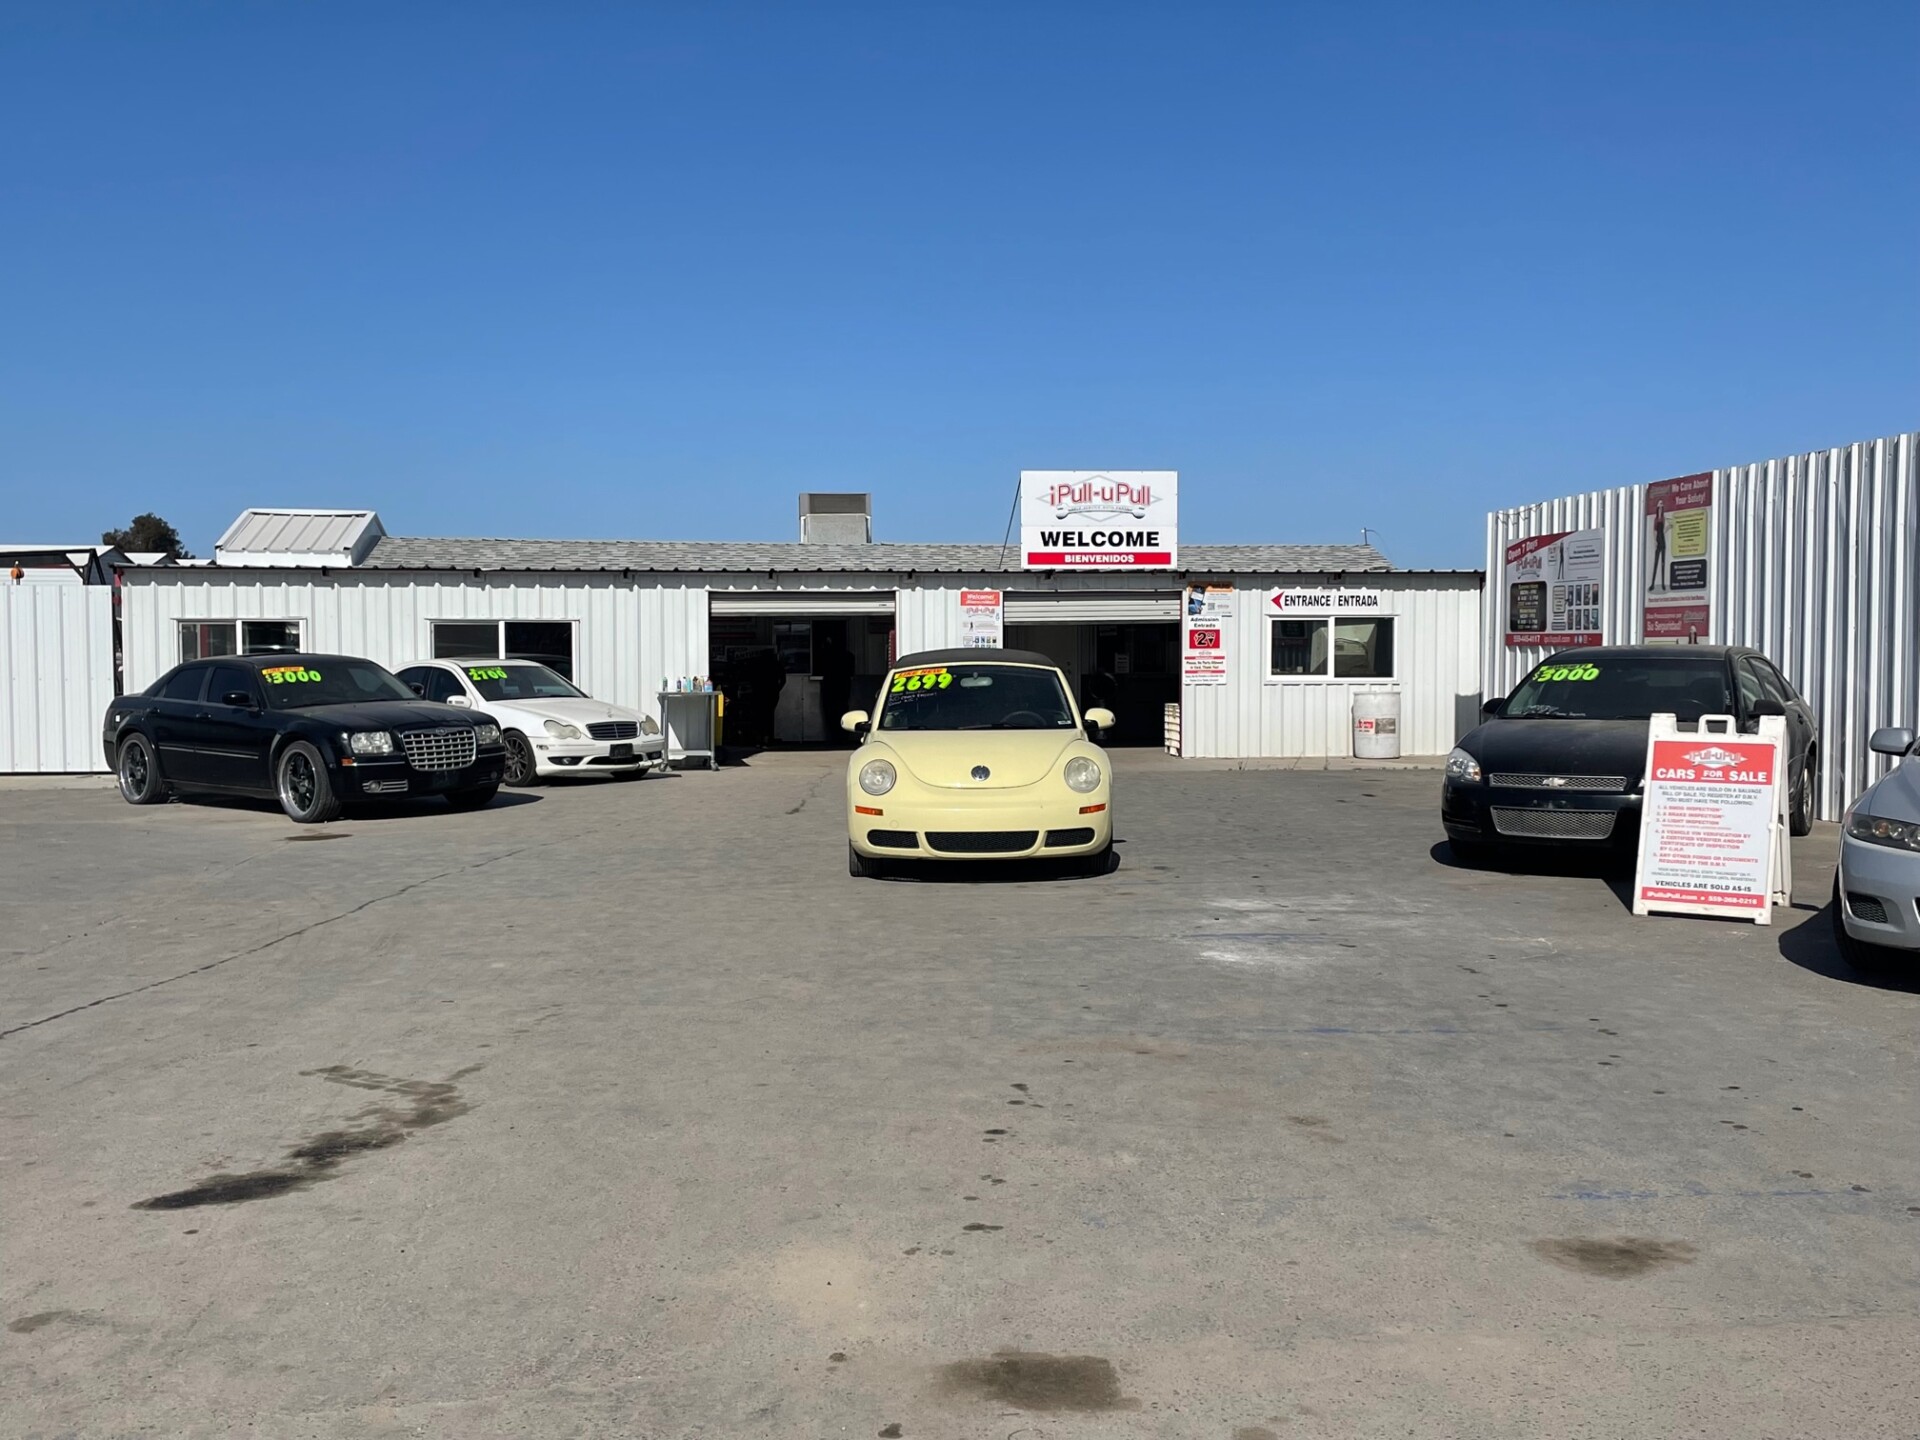 Fresno Junk Yard: Auto Salvage & Junk Car Parts: iPull-uPull Fresno, CA